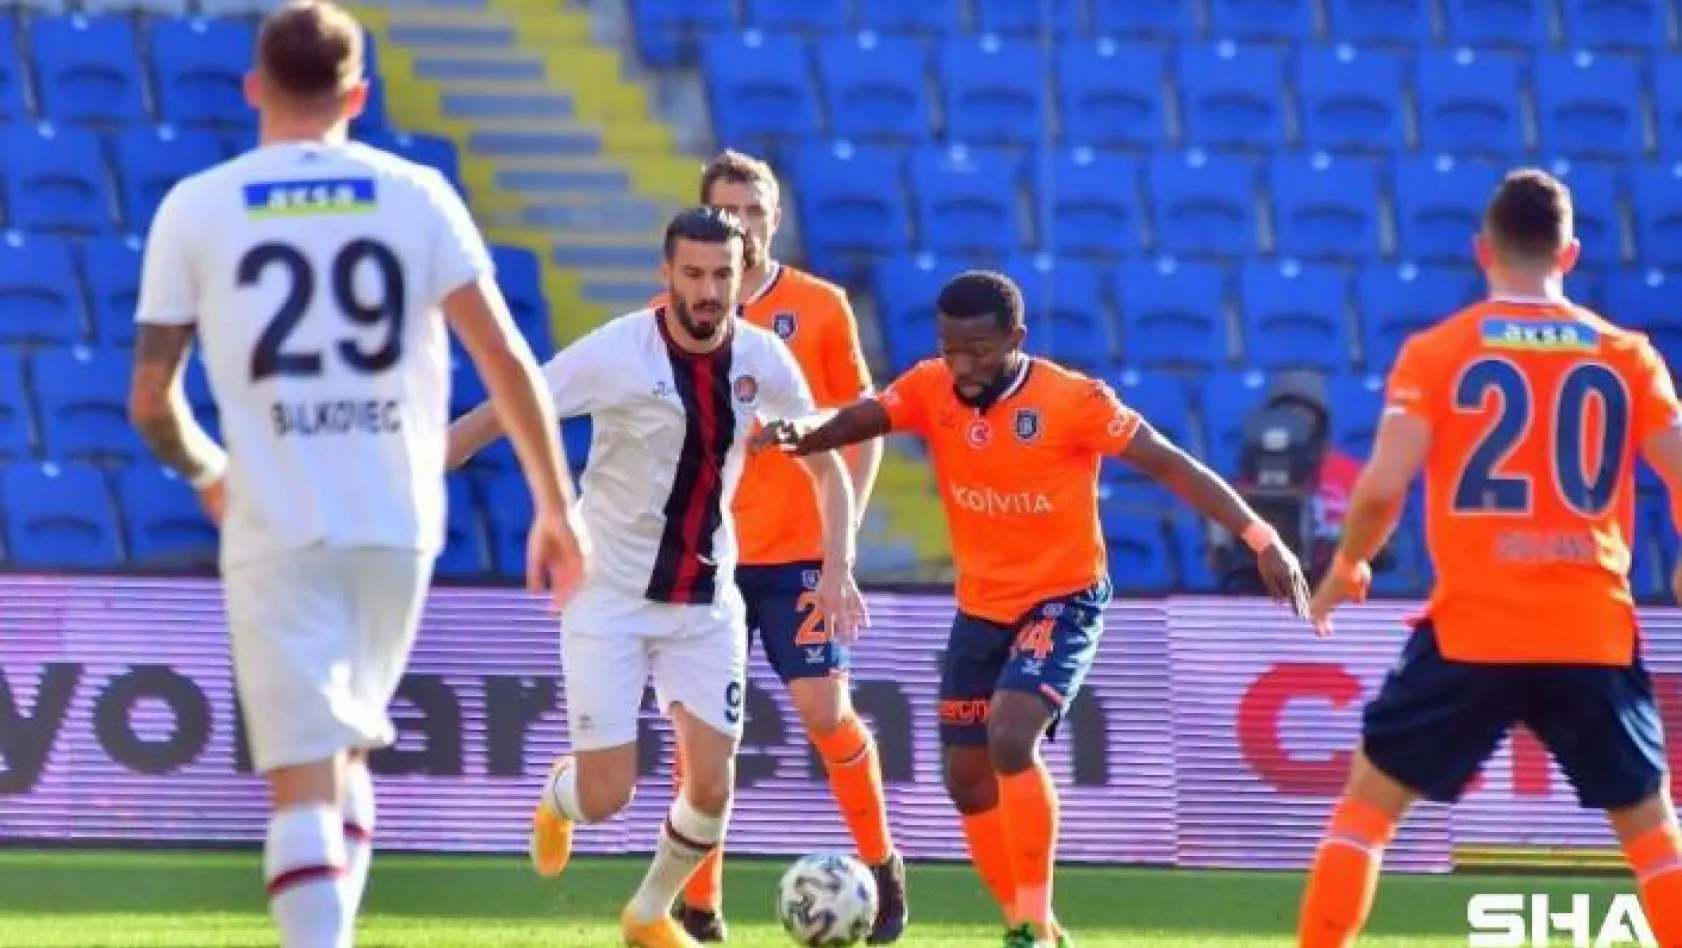 Süper Lig: Medipol Başakşehir: 0 - Fatih Karagümrük: 0 (İlk yarı)